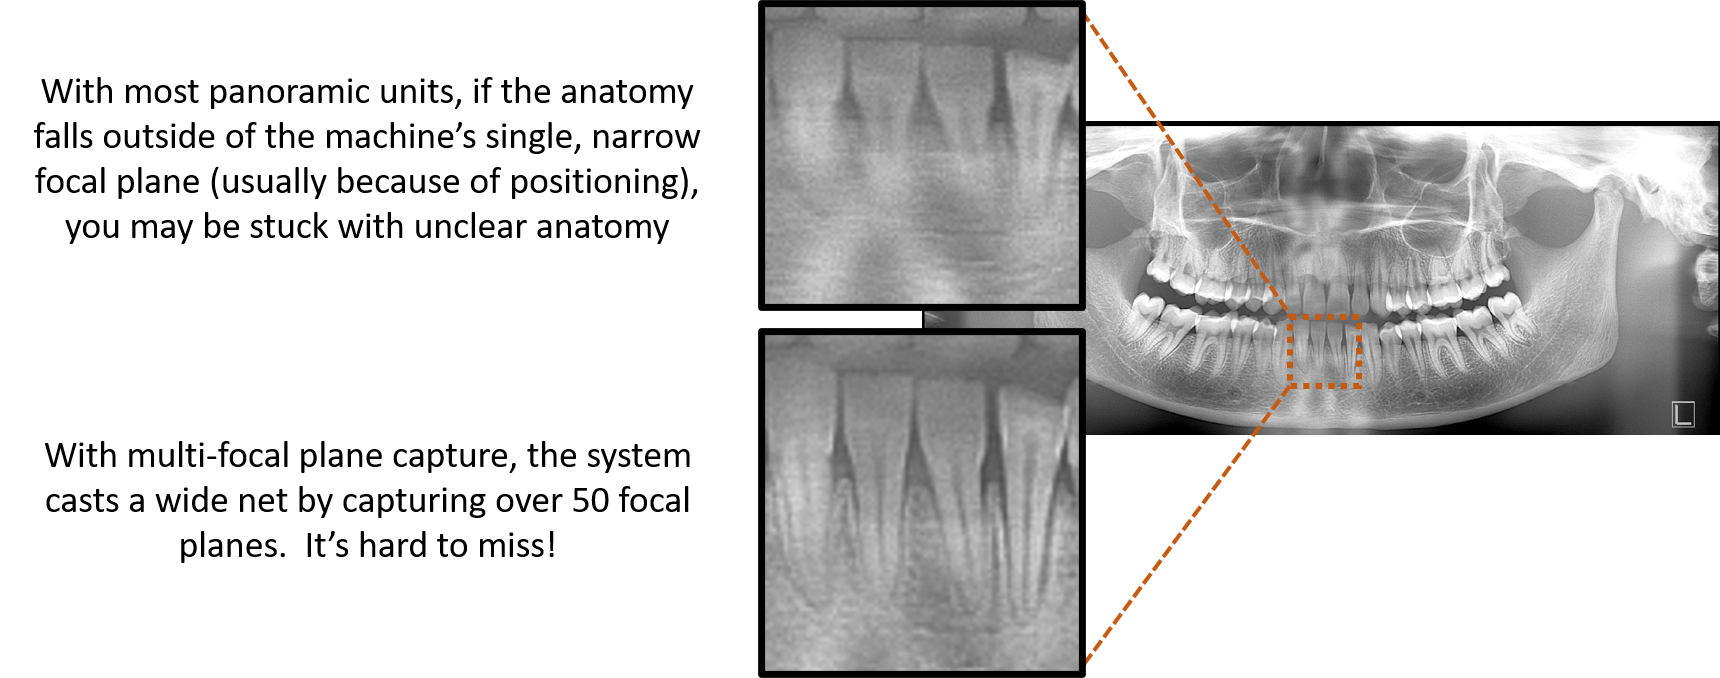 digital dental panoramic x-ray machine